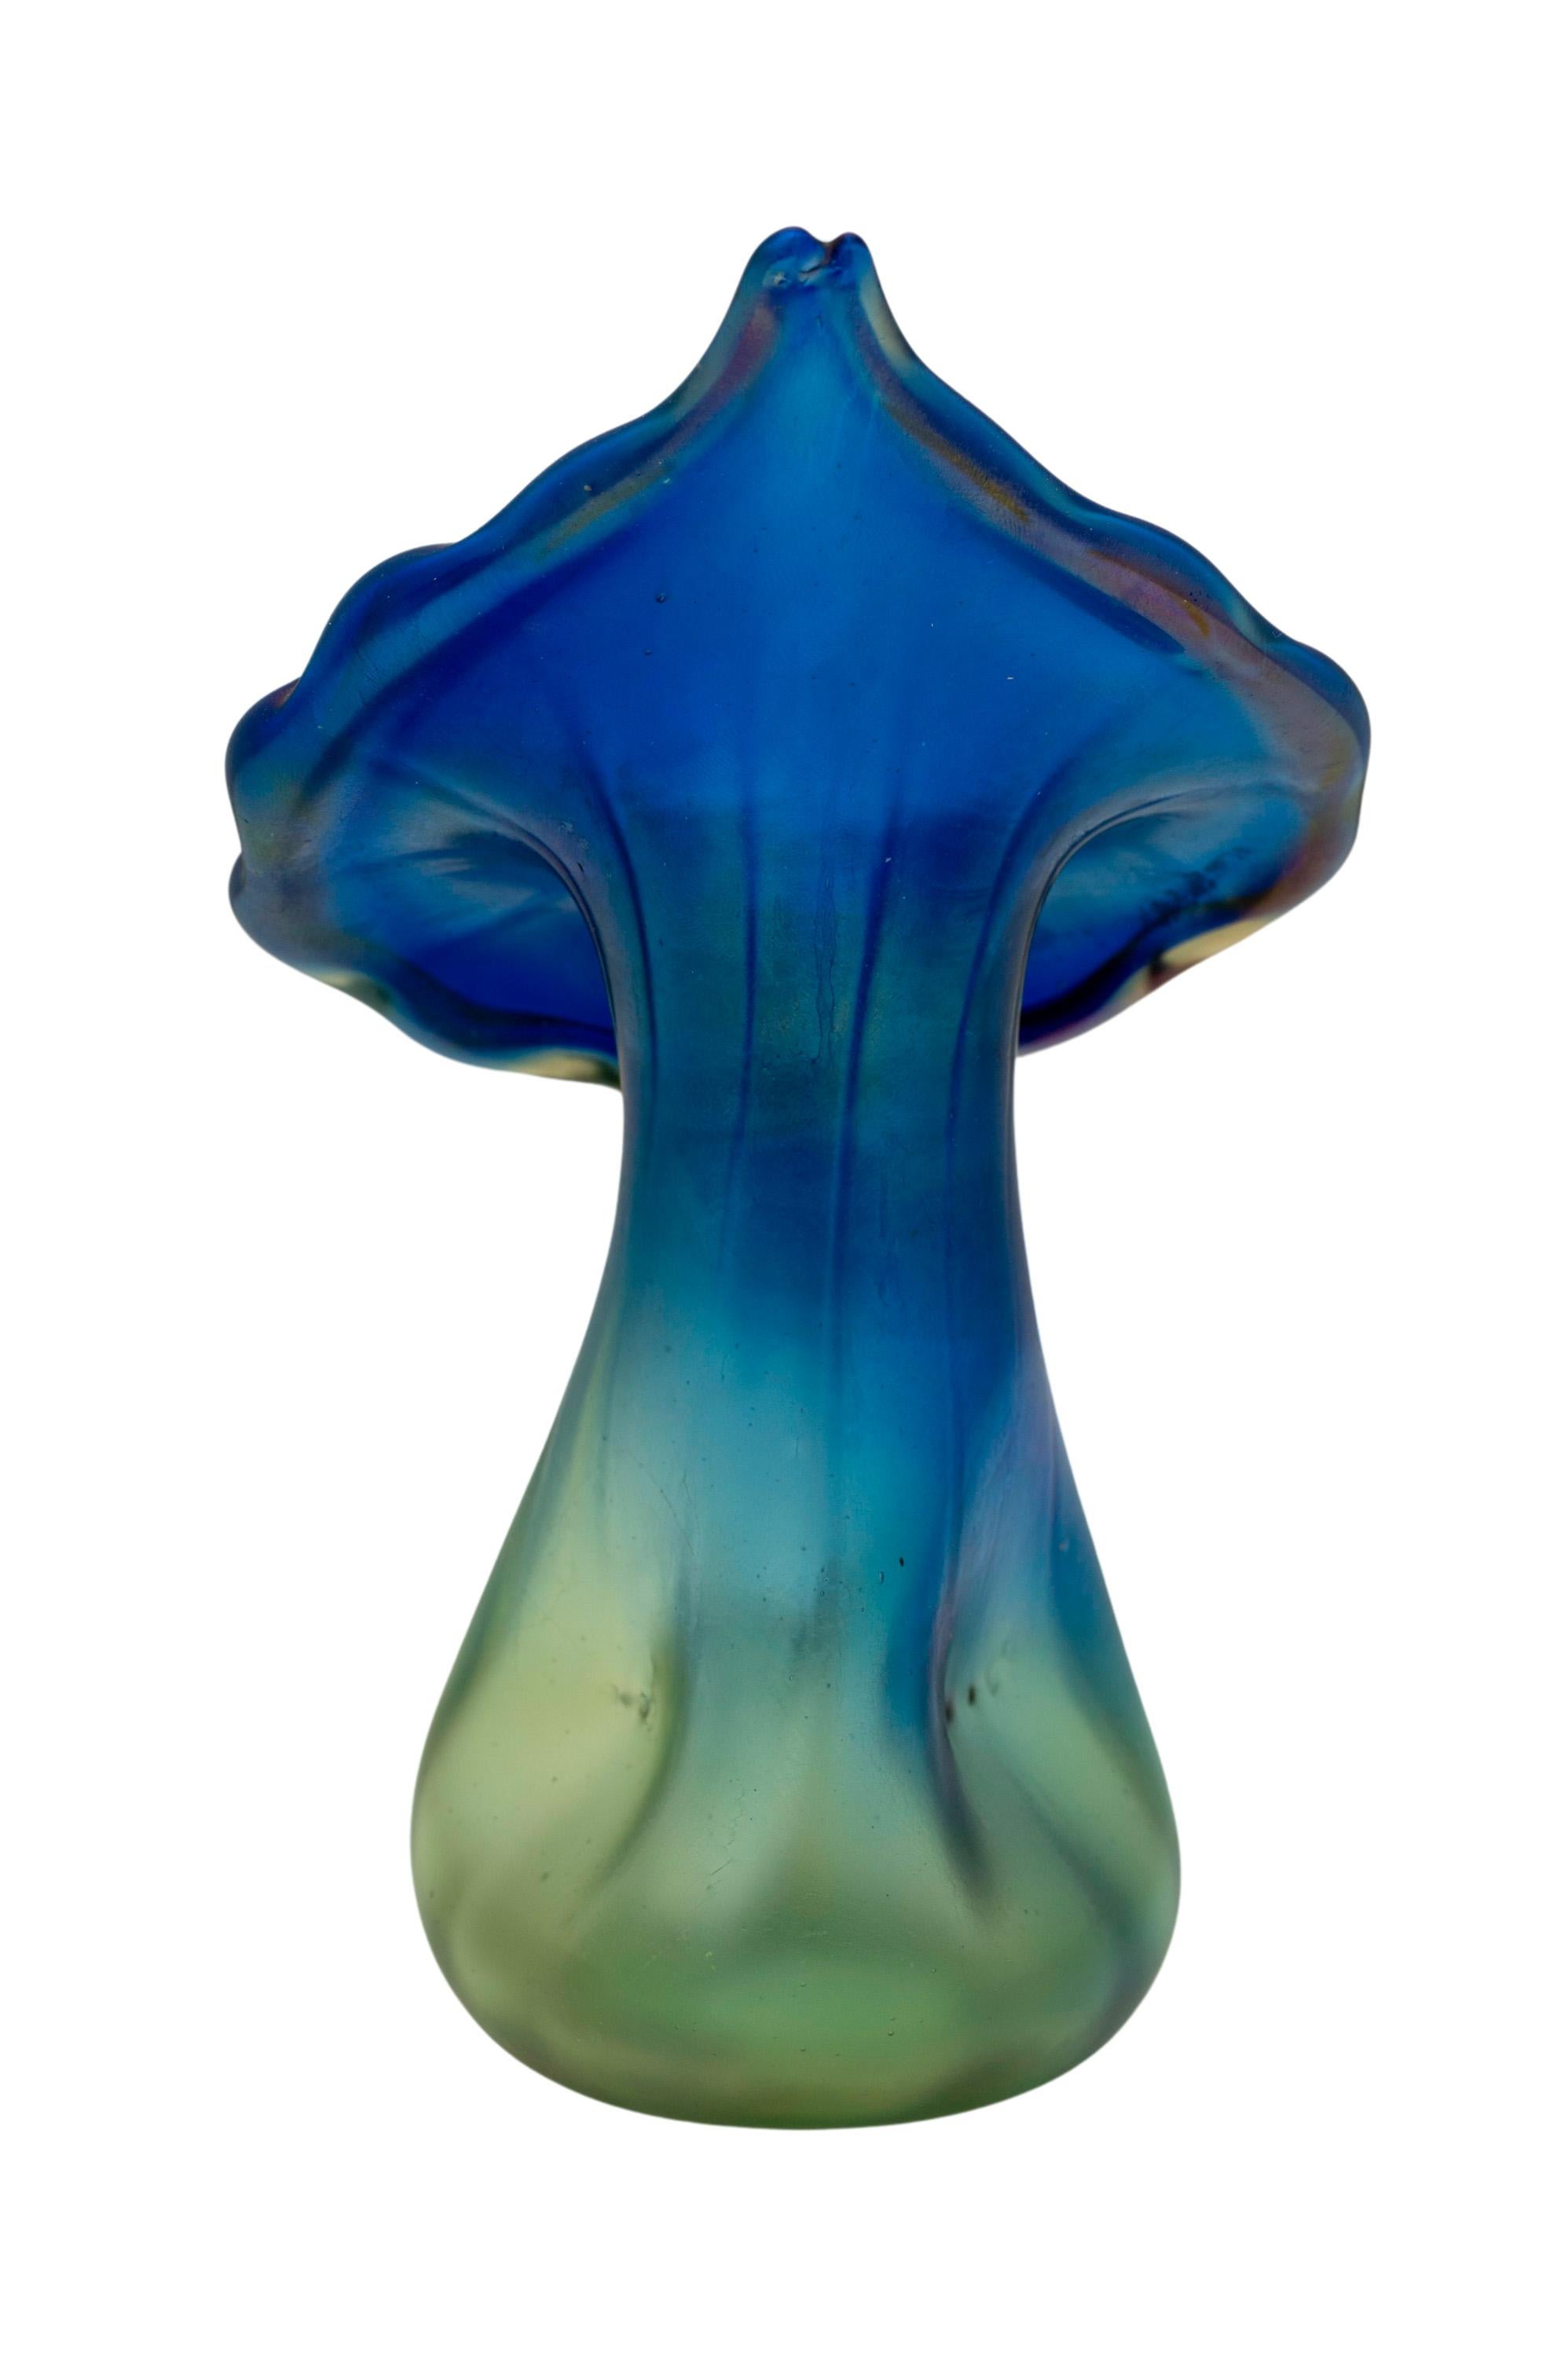 Antique Art Nouveau Glass Vase Loetz Luna Decoration 1901 Vienna Jugendstil Blue For Sale 1